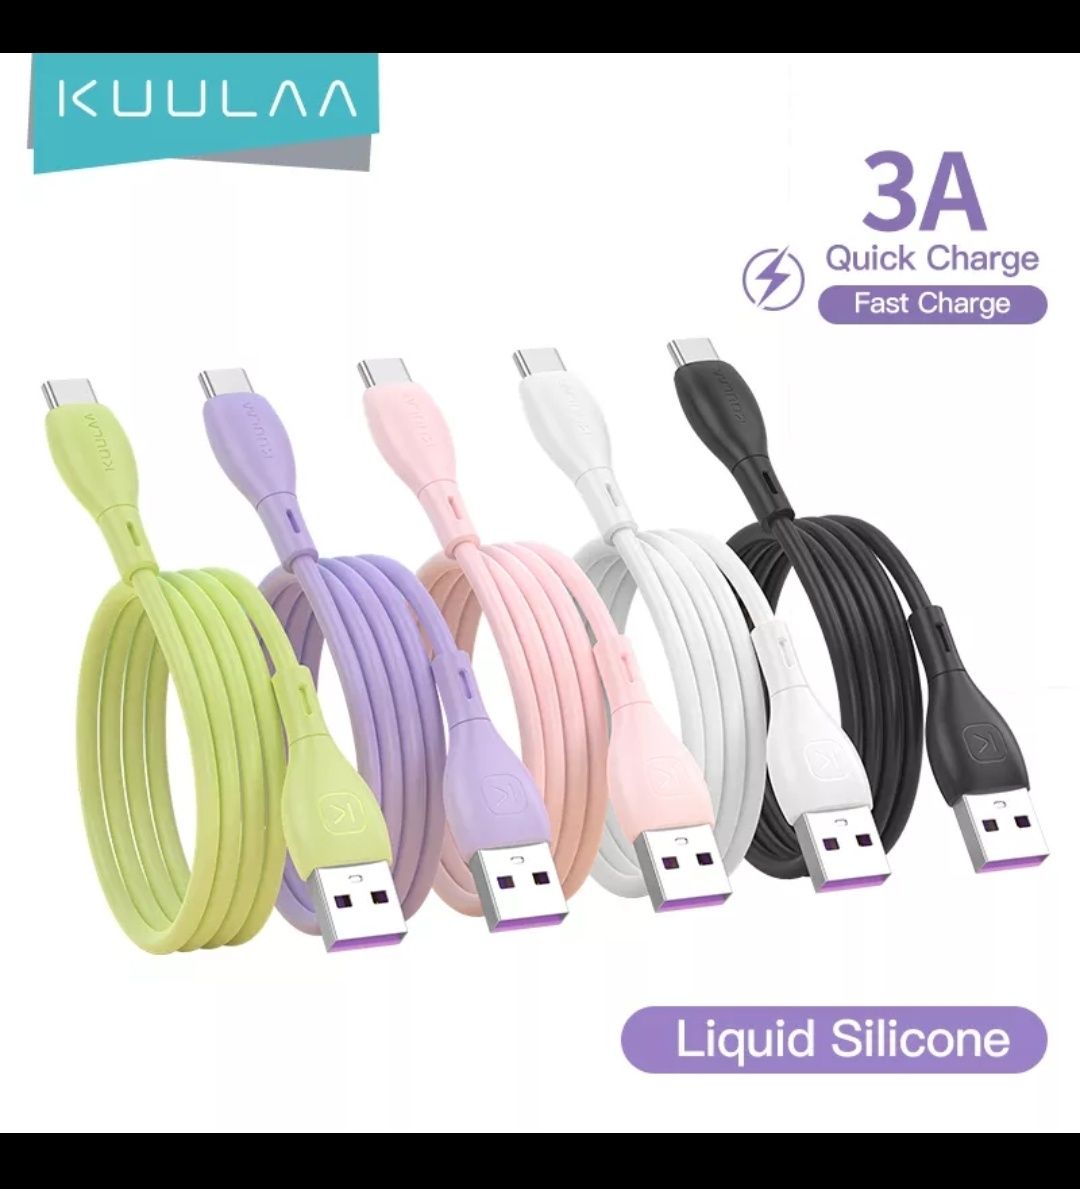 Cablu usb c - fast charging - lungime 2m (verde, mov)

Predare persona